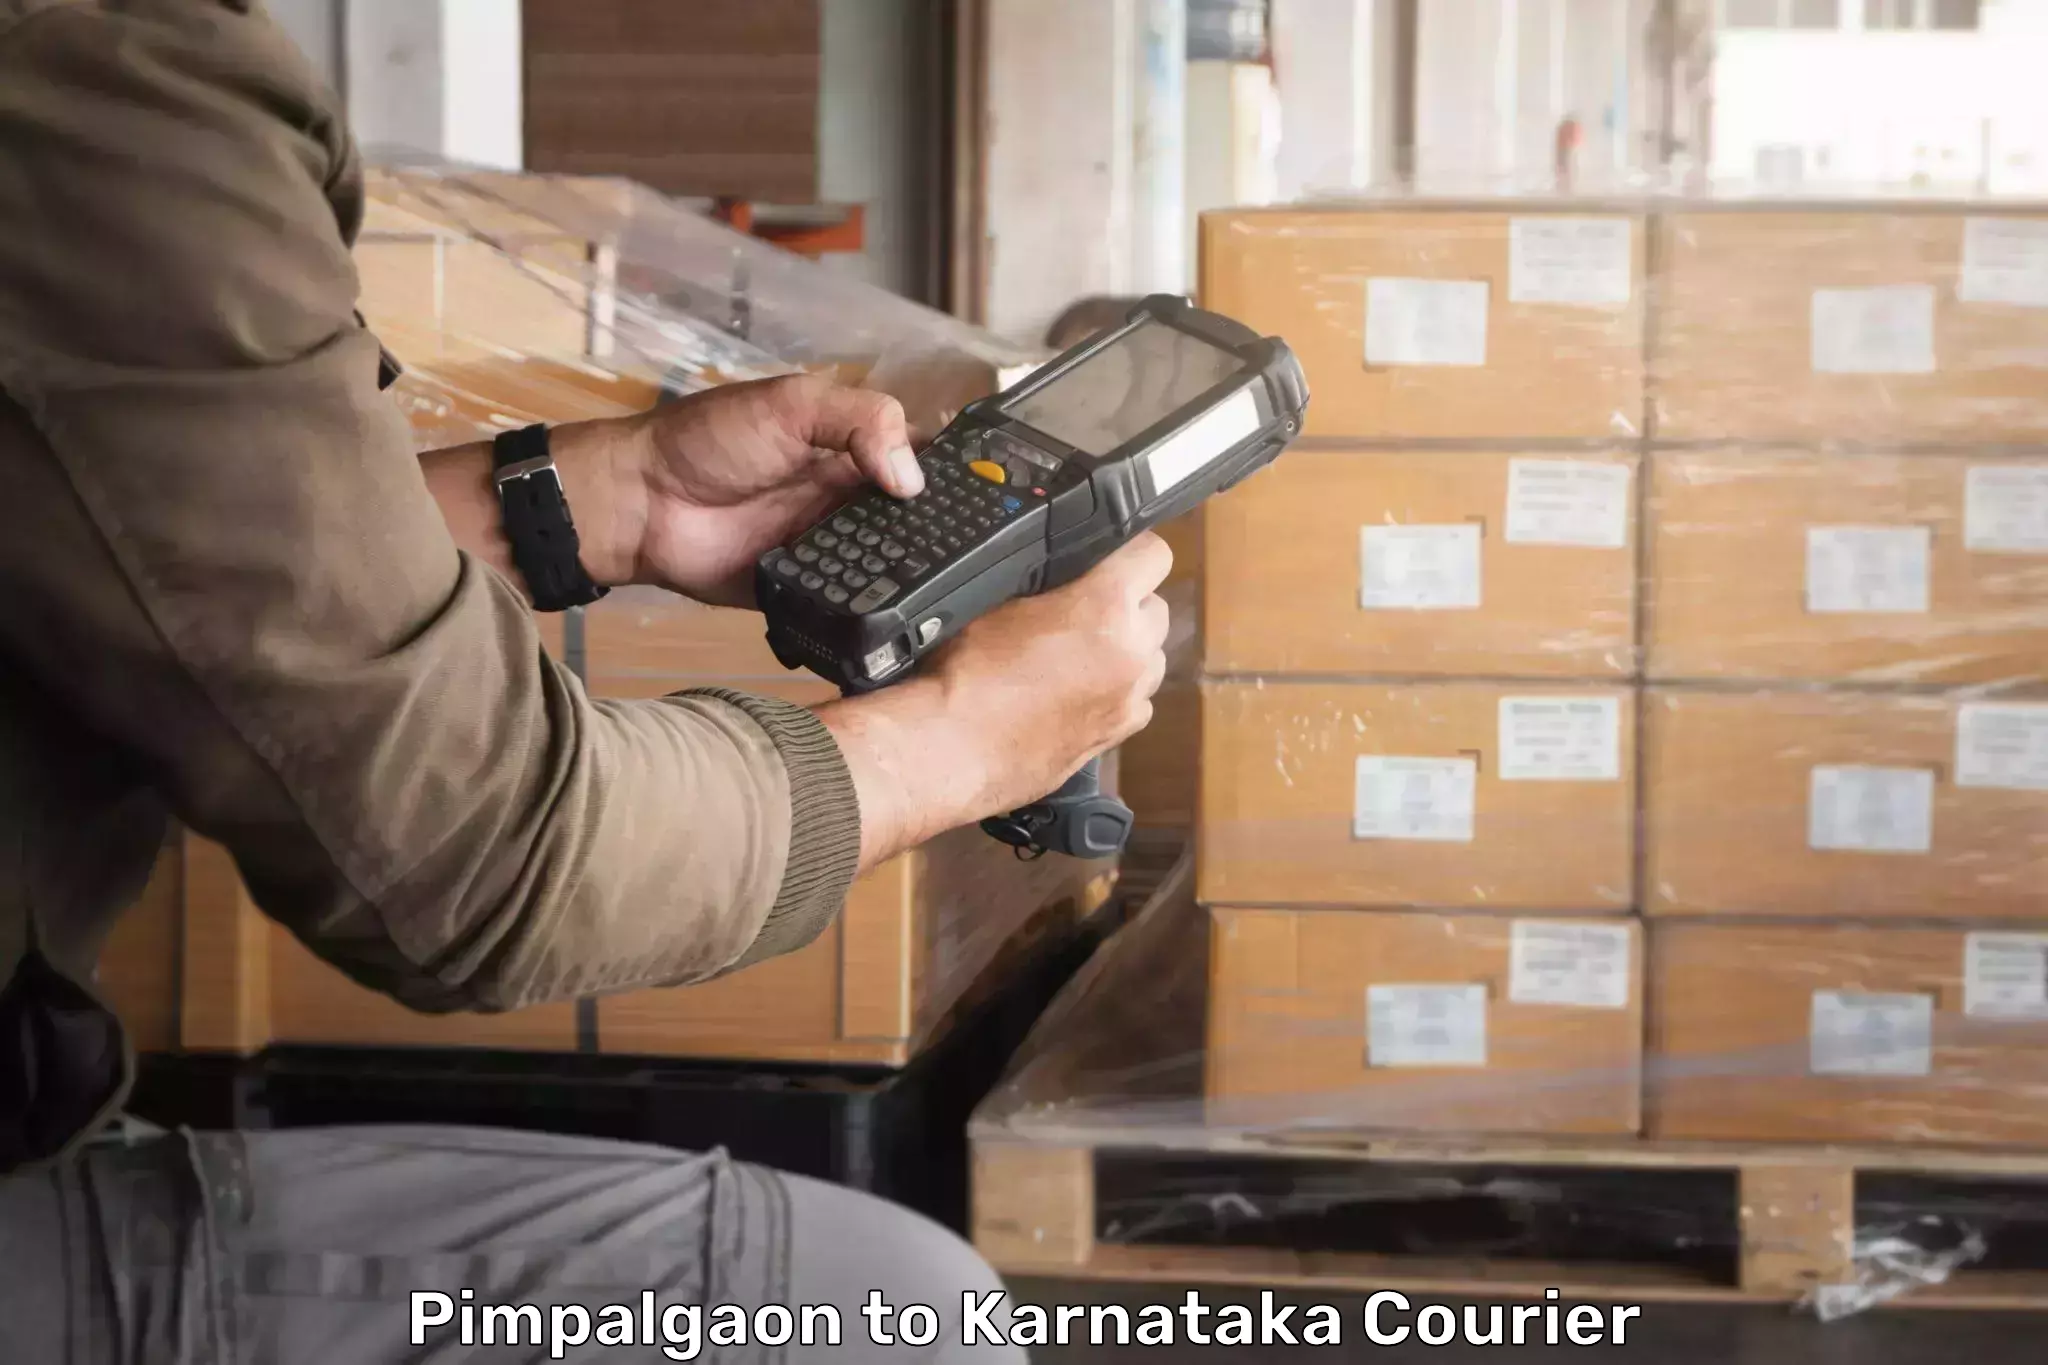 Efficient parcel service Pimpalgaon to Hirekerur